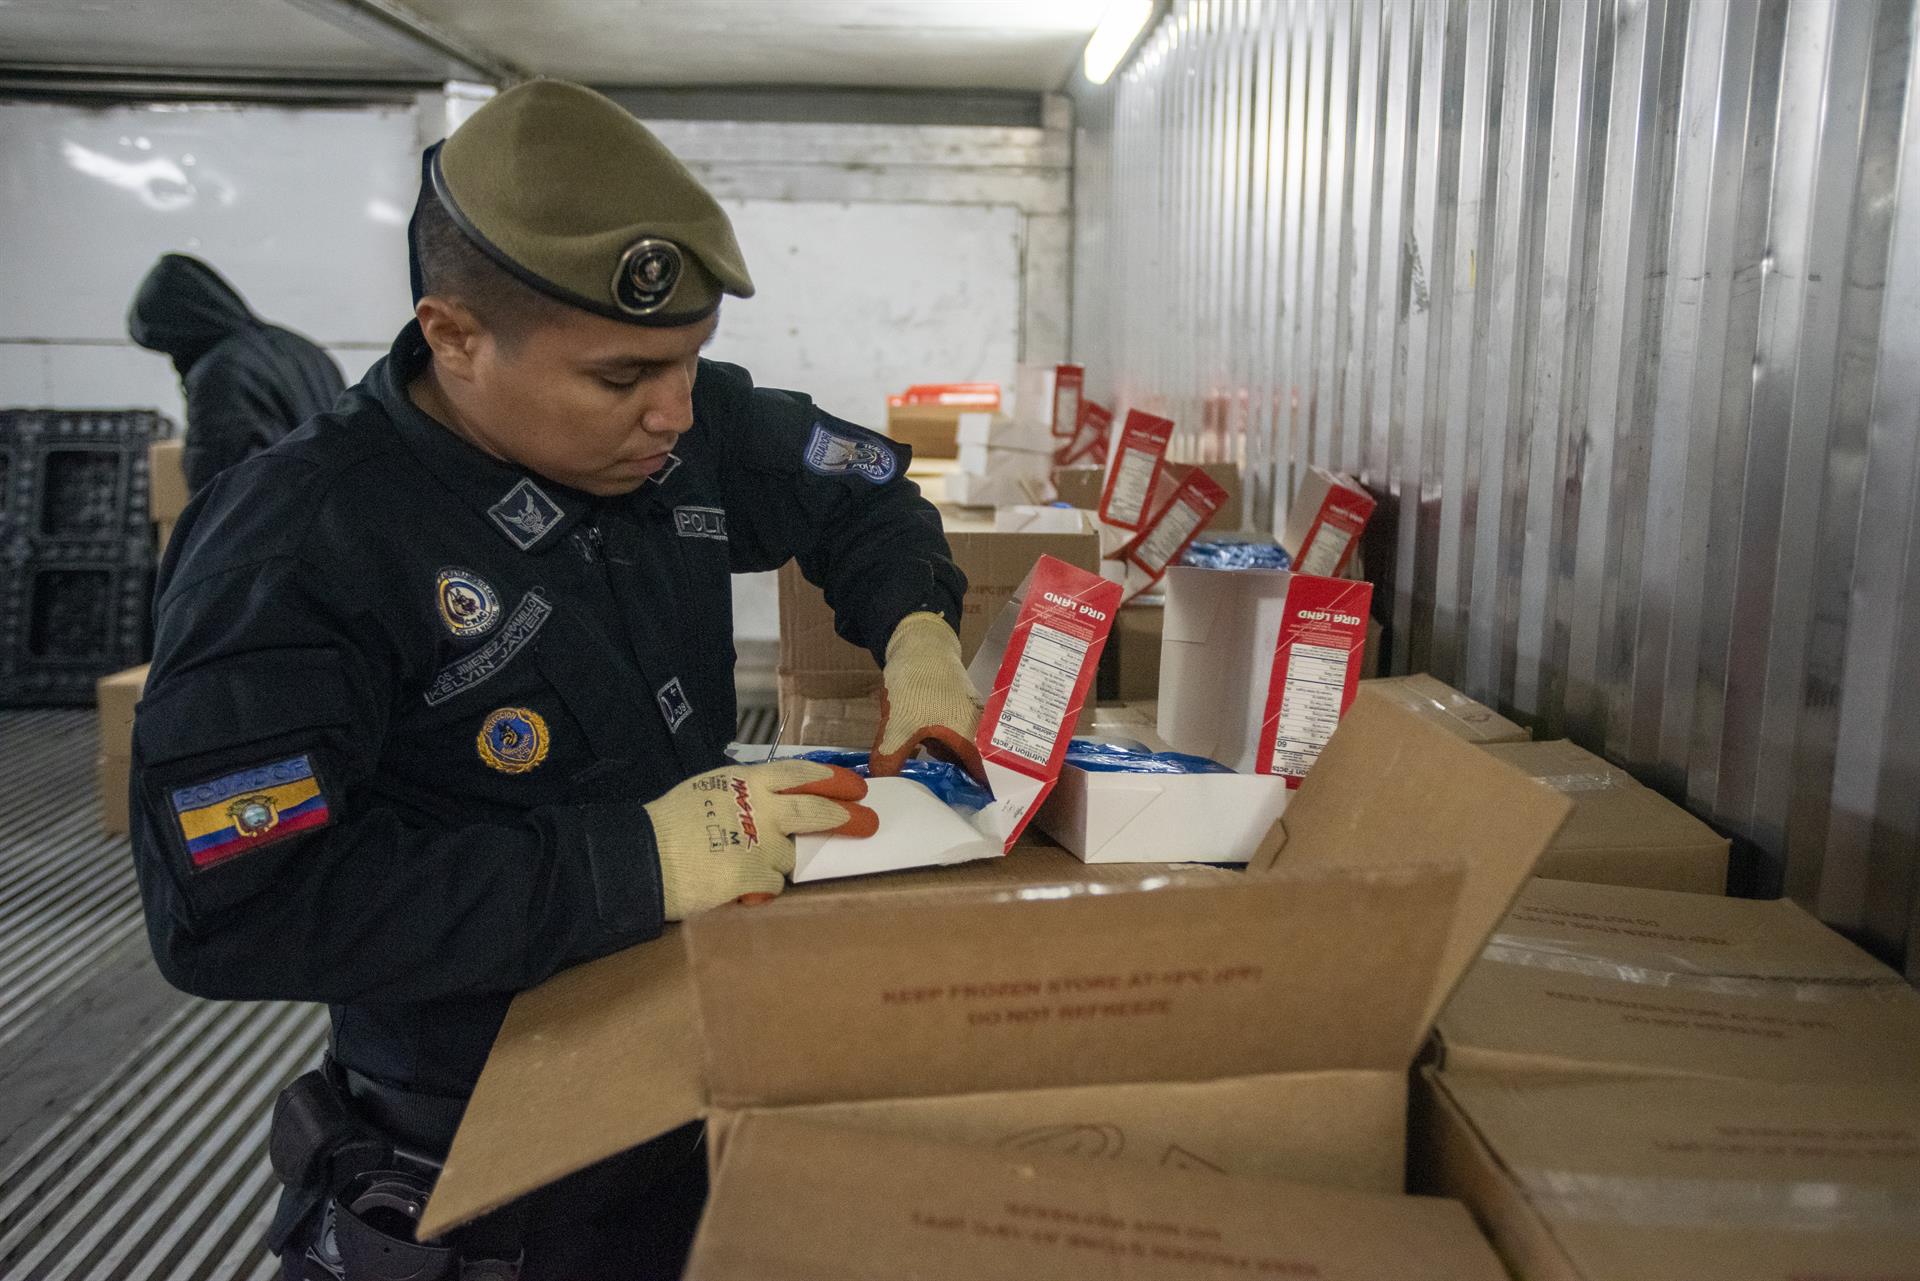 Carteles de la droga declaran guerra al Gobierno de Ecuador